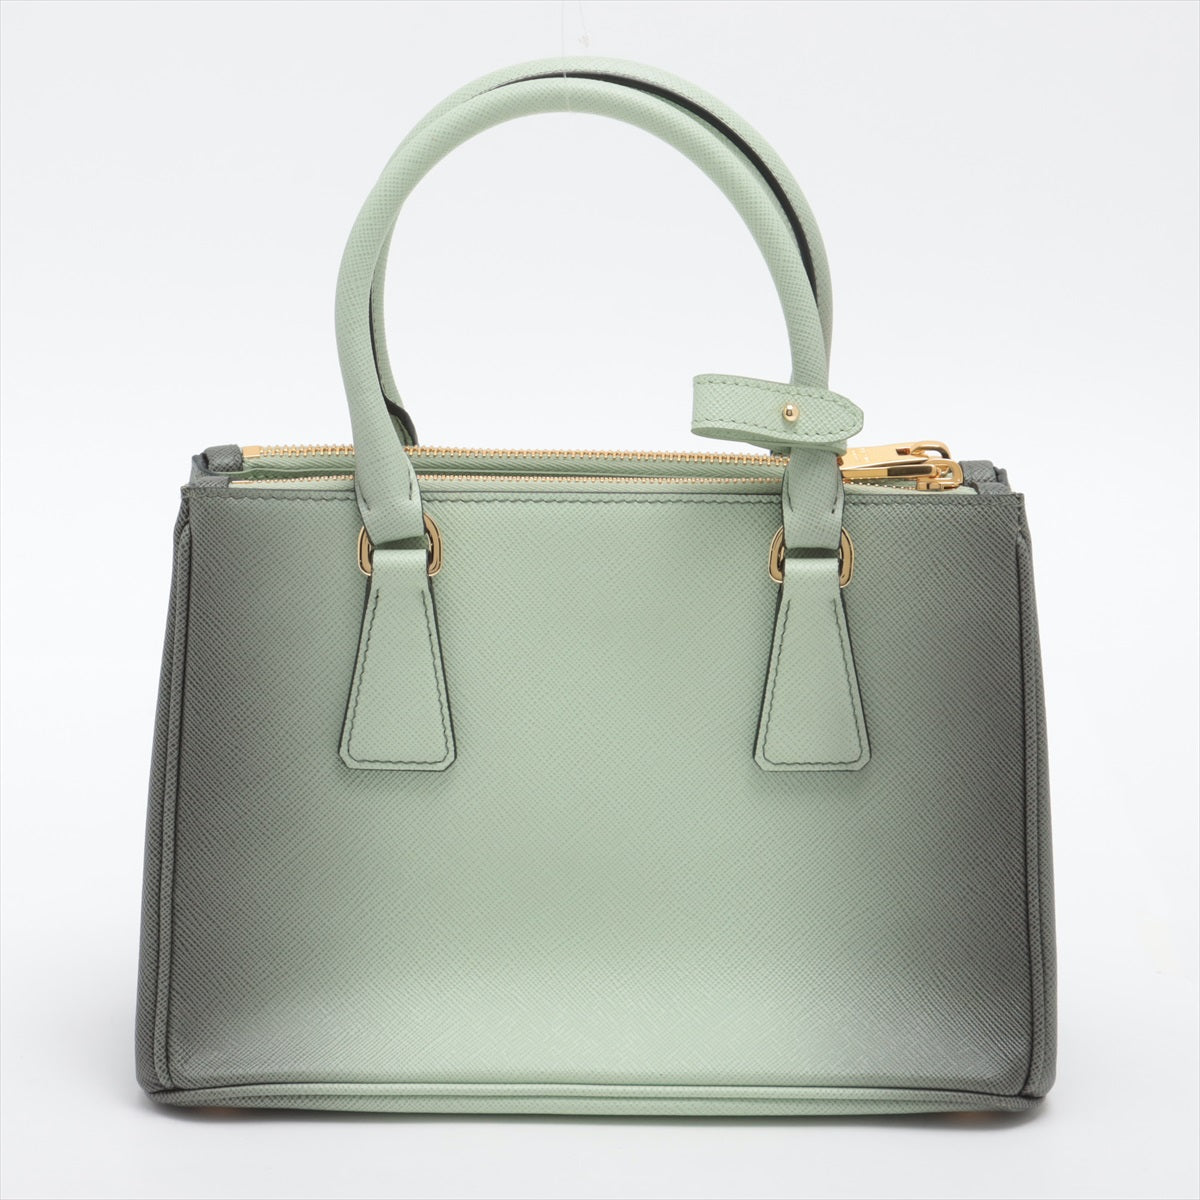 Prada Galleria Small Saffiano Leather Ombré Light Green 2-Way Bag